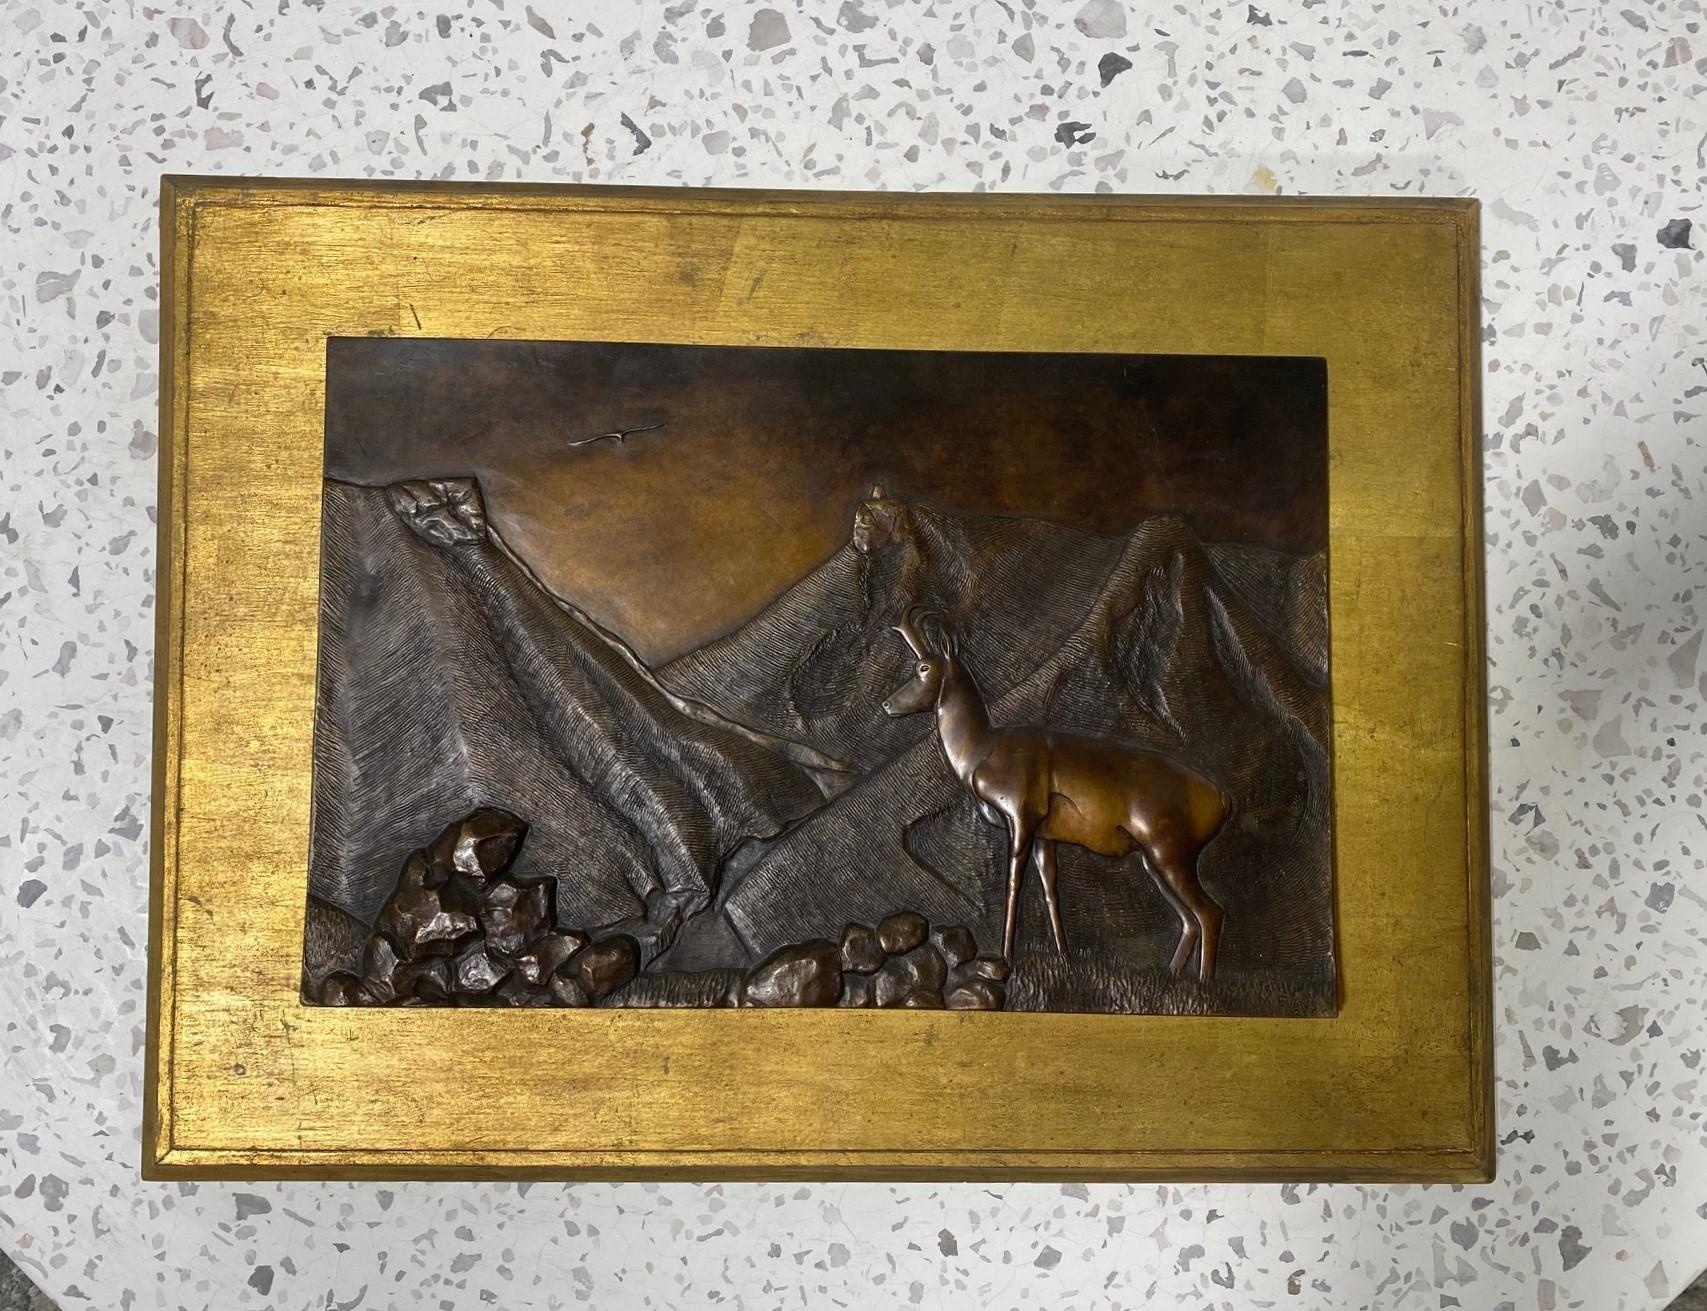 Une plaque de bronze en relief de taille relativement importante, magnifiquement réalisée et richement détaillée par l'artiste américain R. M. Evans. L'œuvre intitulée 